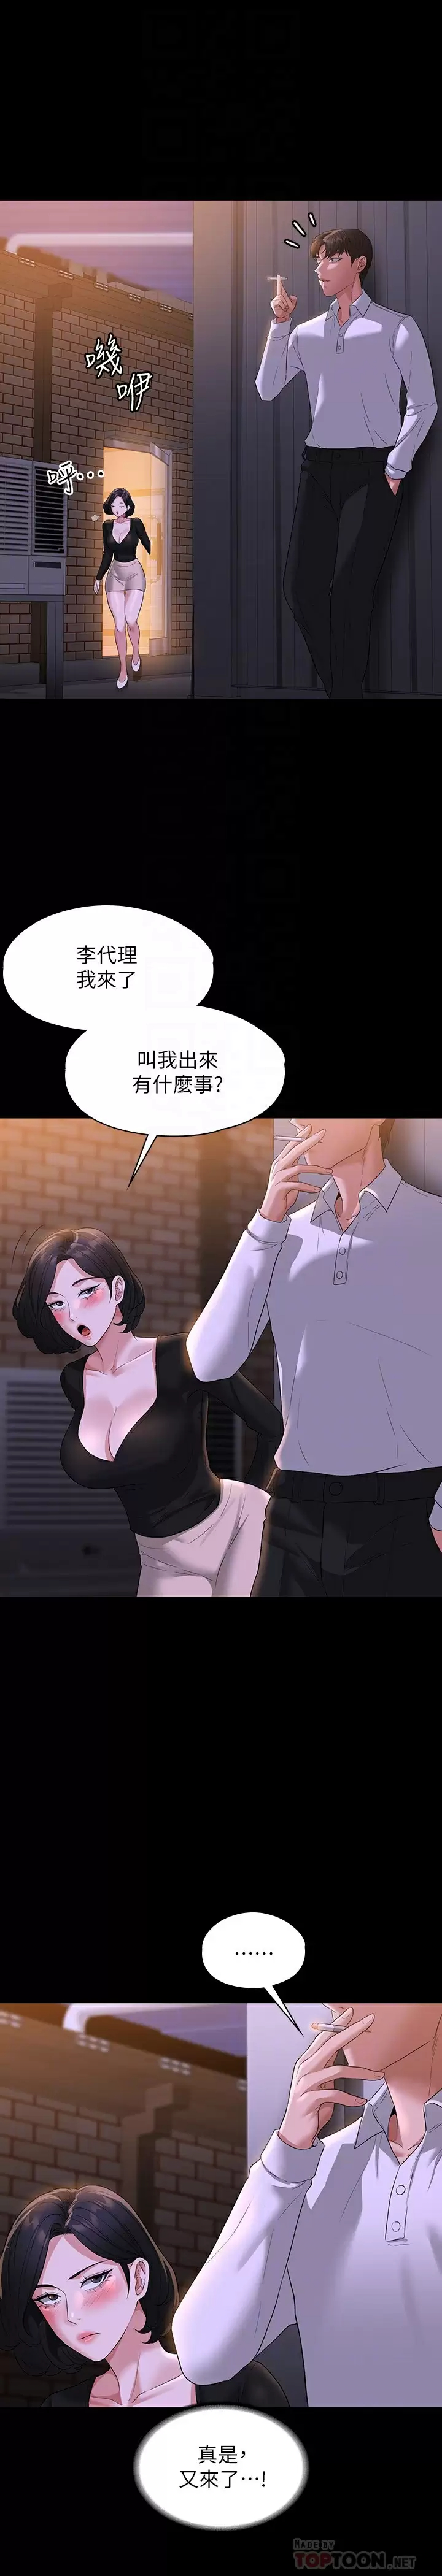 韩国污漫画 超級公務員 第47话 让人羞耻的淫乱震动声 10